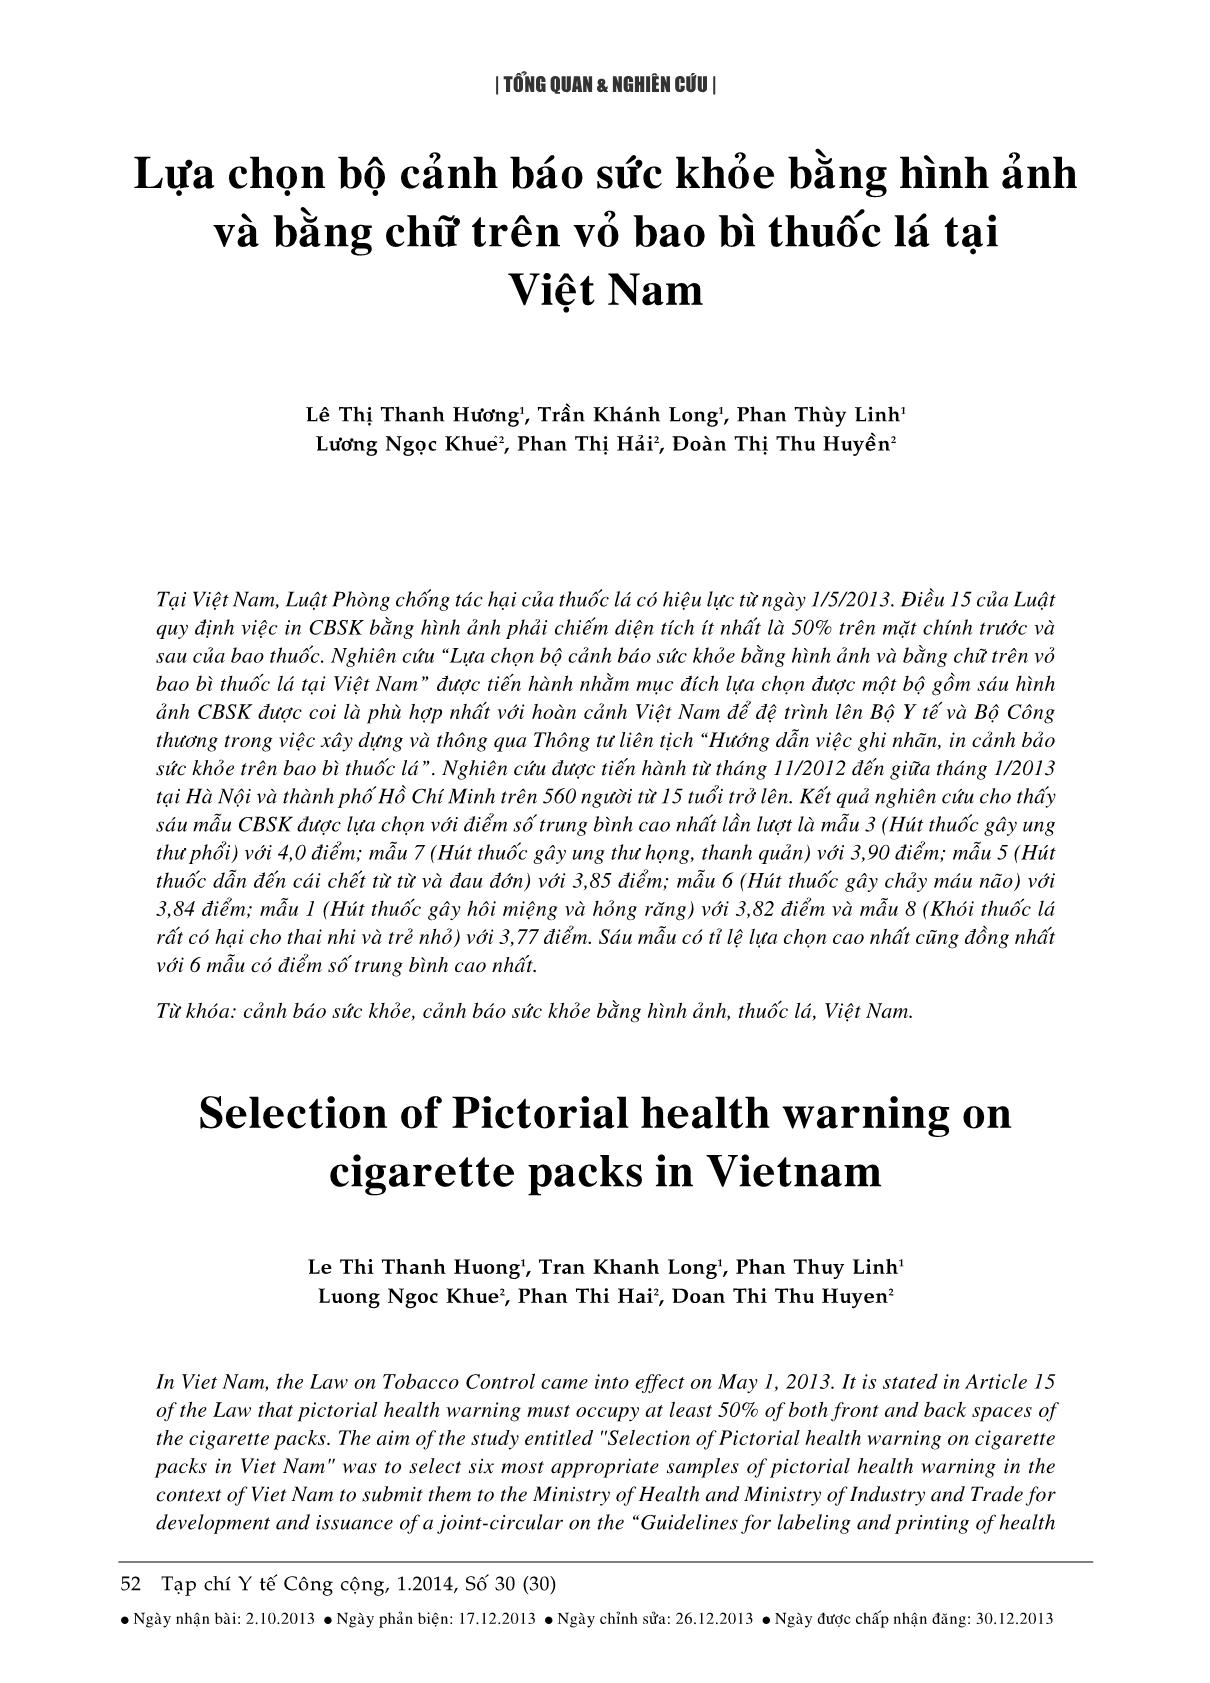 Lựa chọn bộ cảnh báo sức khỏe bằng hình ảnh và bằng chữ trên vỏ bao bì thuốc lá tại Việt Nam trang 1